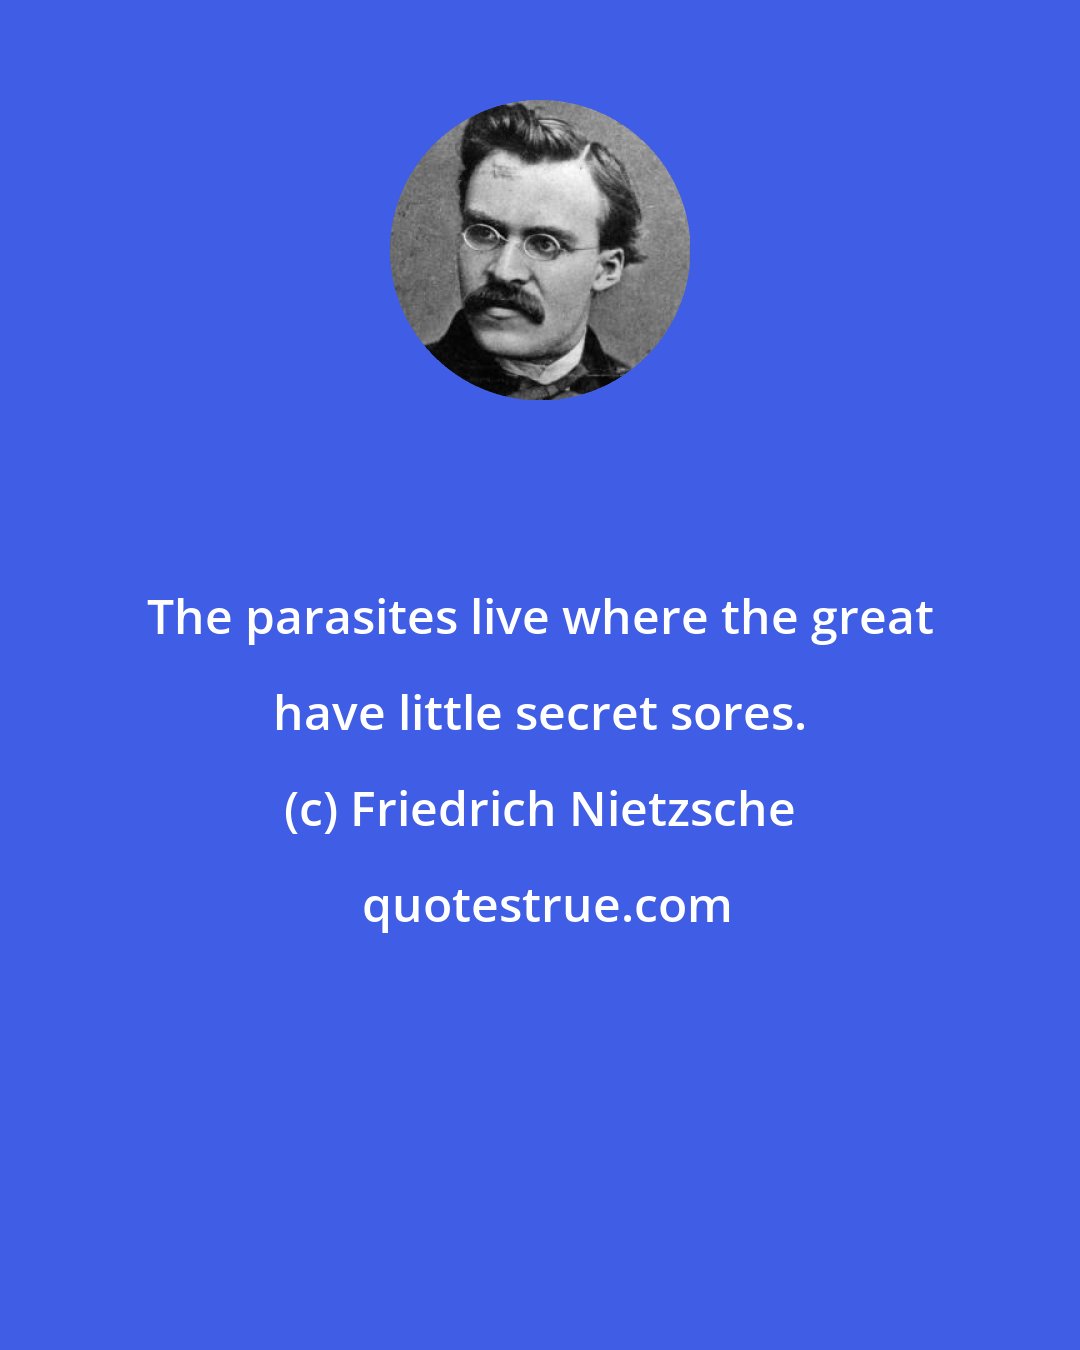 Friedrich Nietzsche: The parasites live where the great have little secret sores.